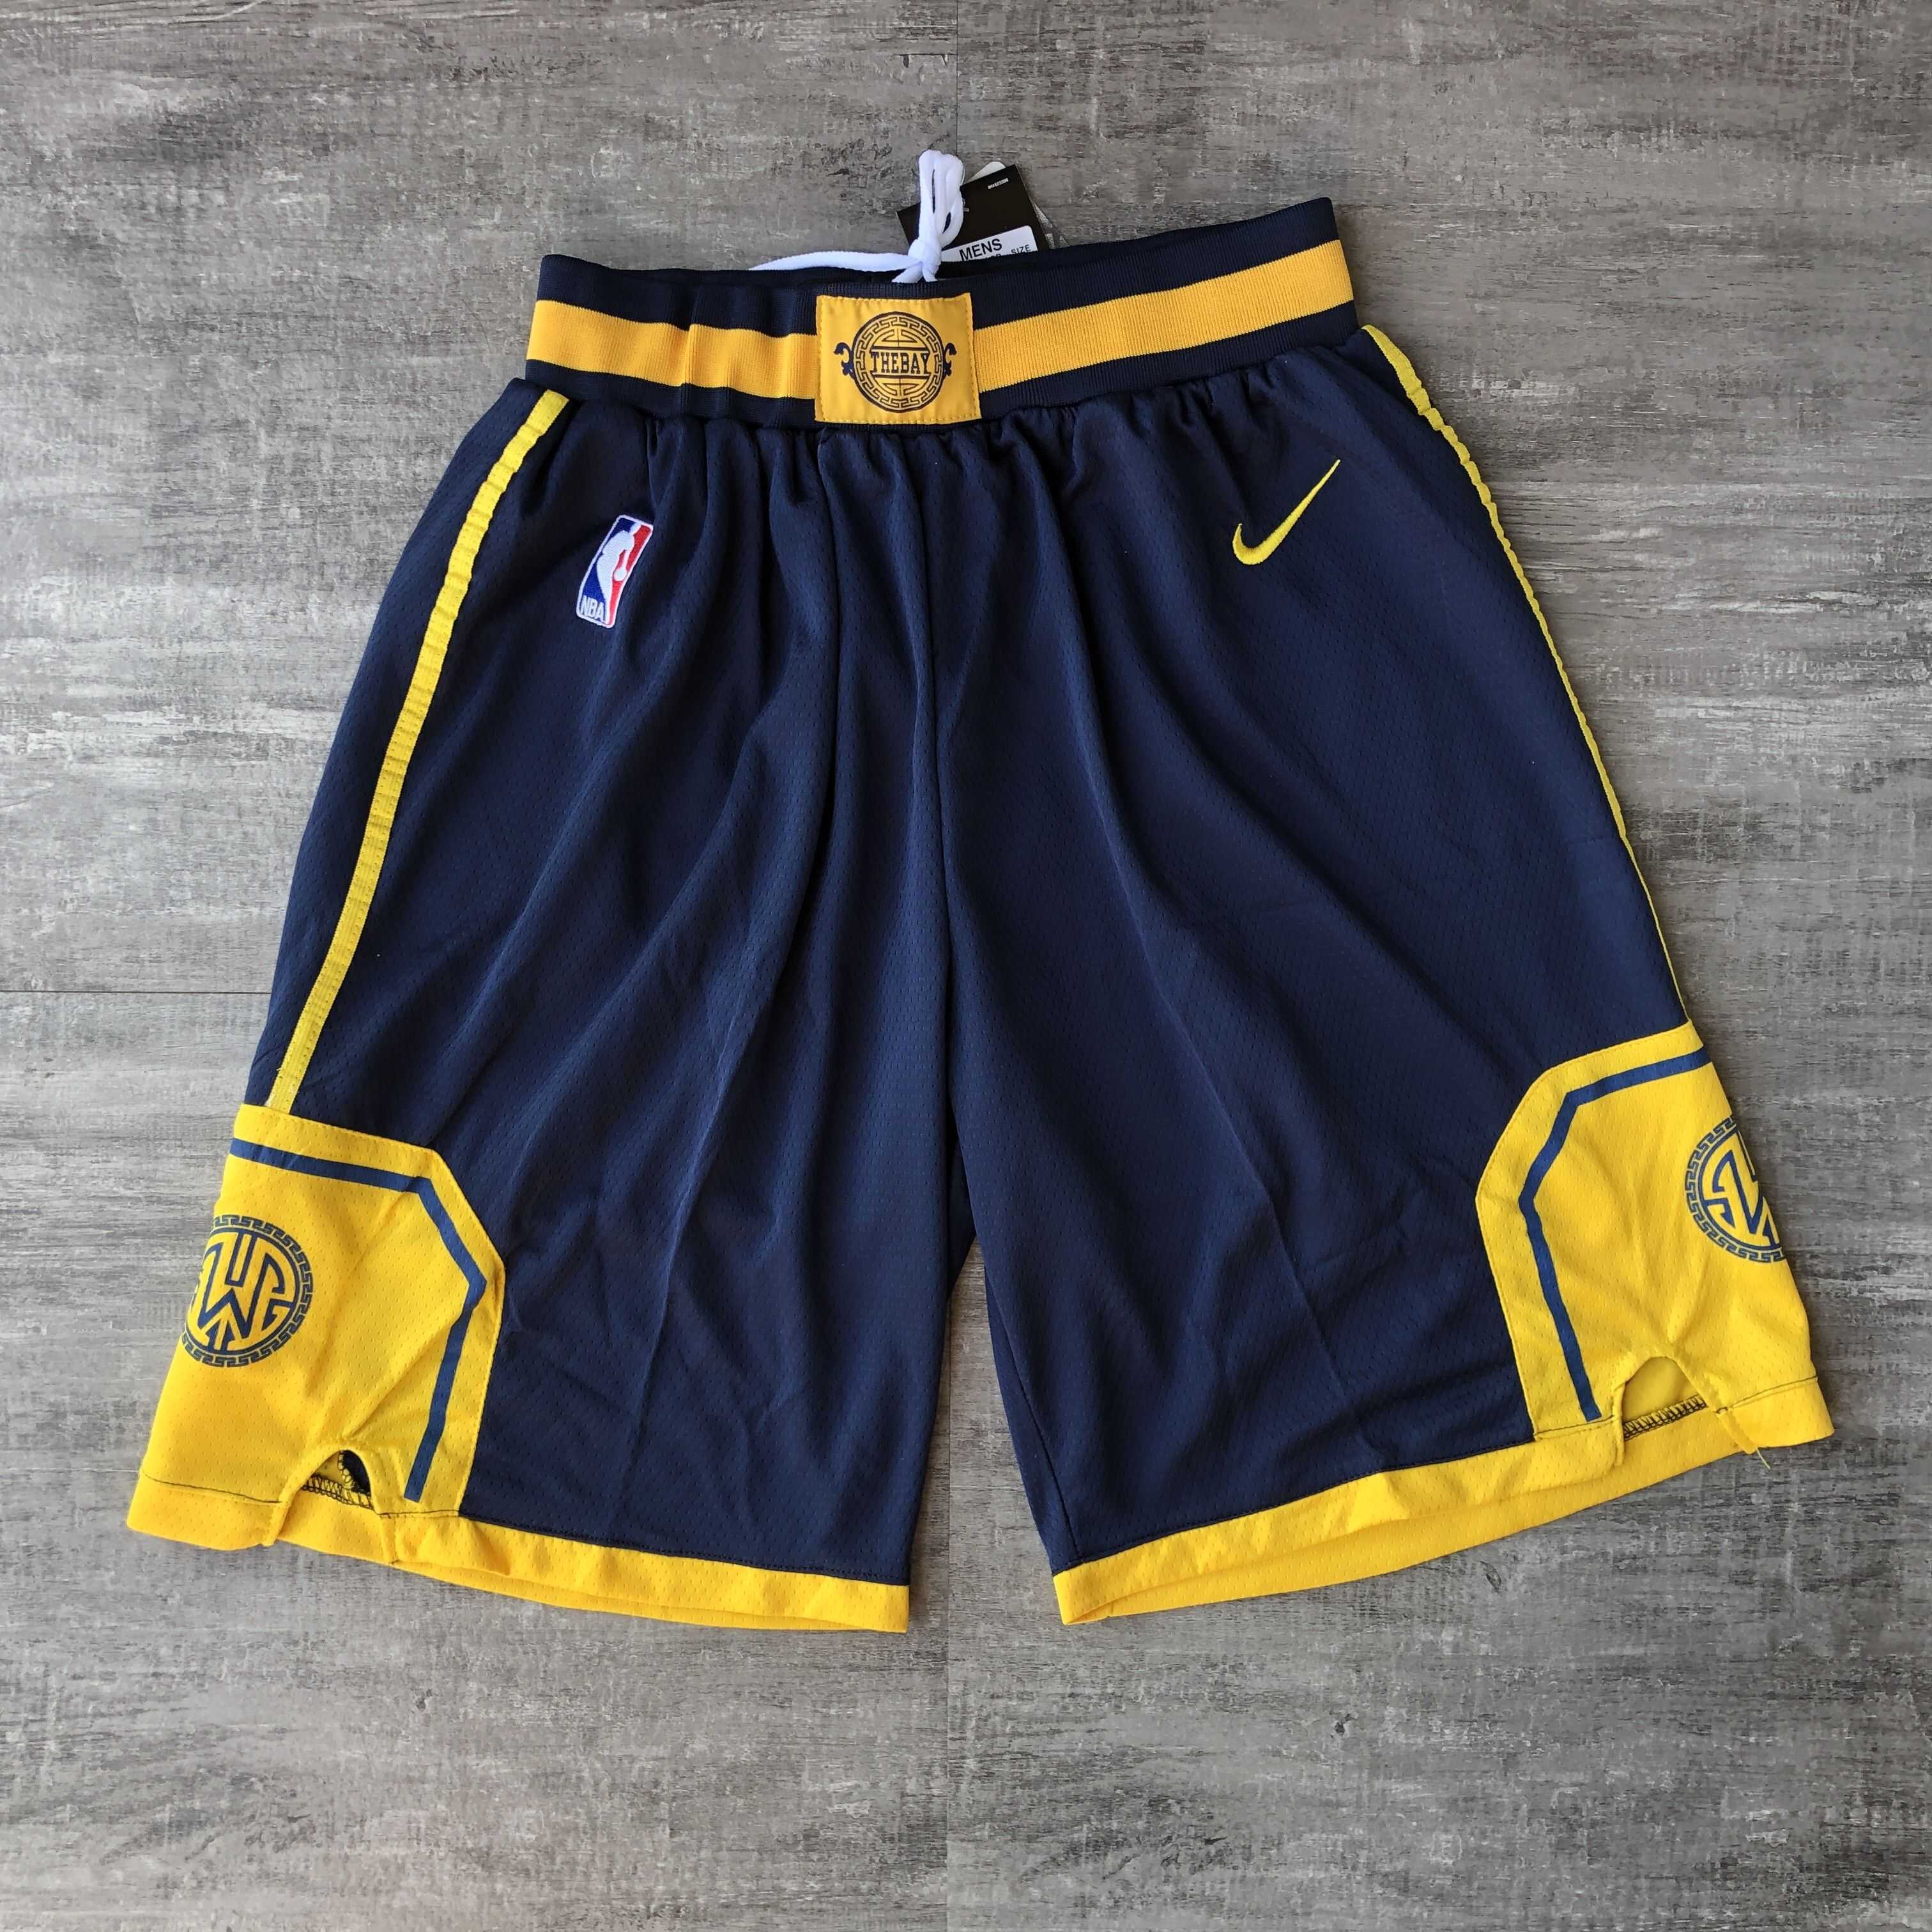 Men NBA Golden State Warriors navy blue Shorts 0416